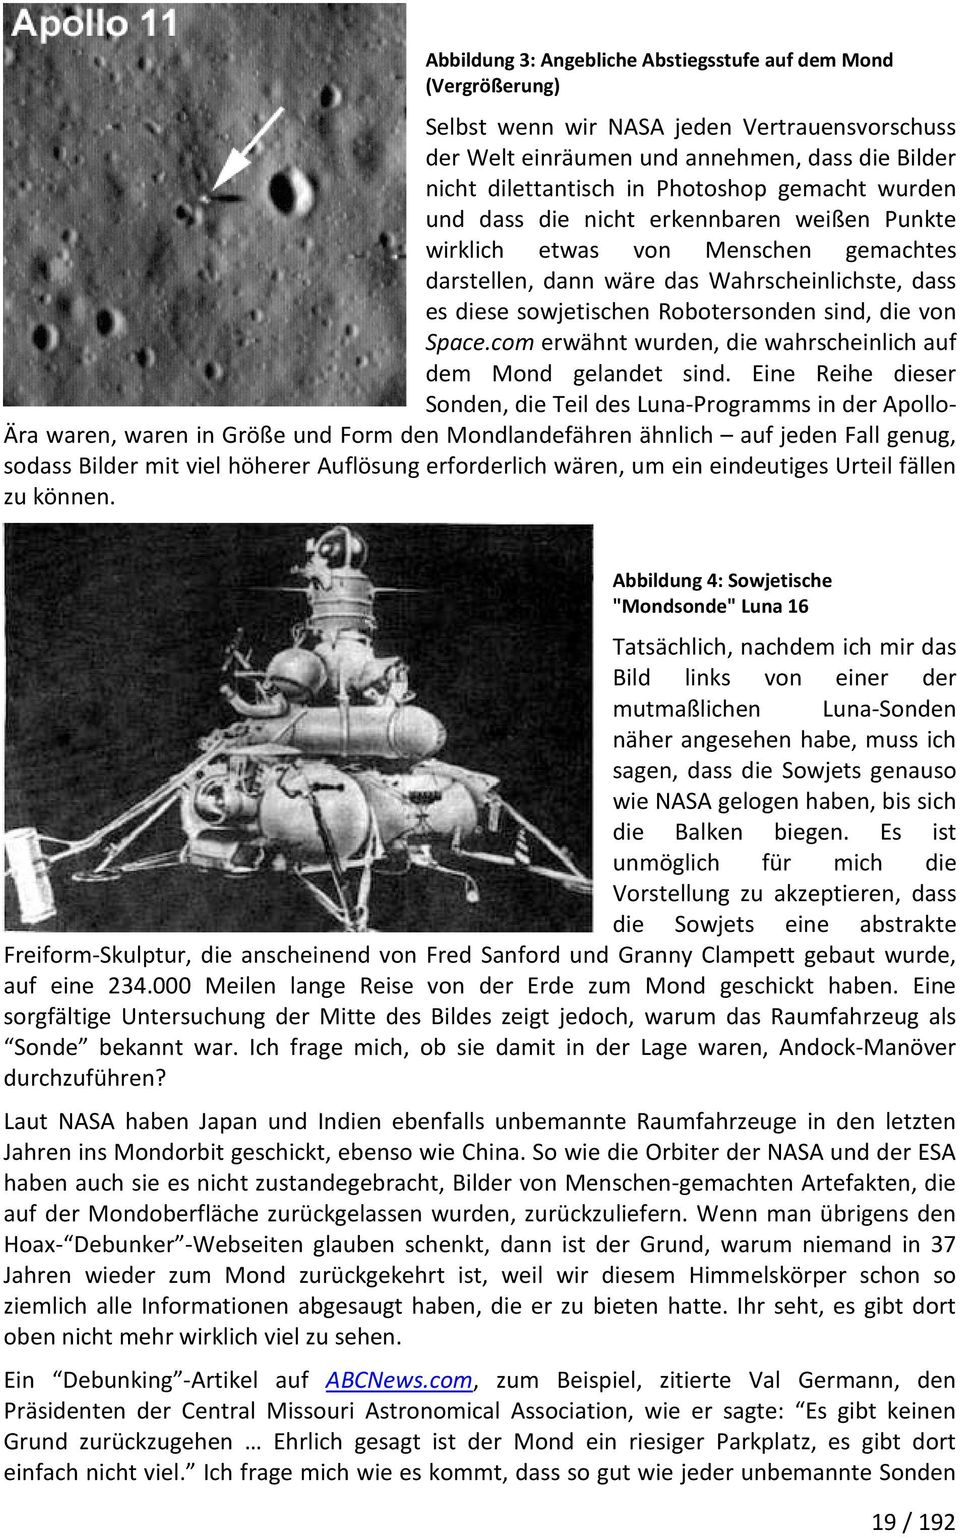 Space.com erwähnt wurden, die wahrscheinlich auf dem Mond gelandet sind.